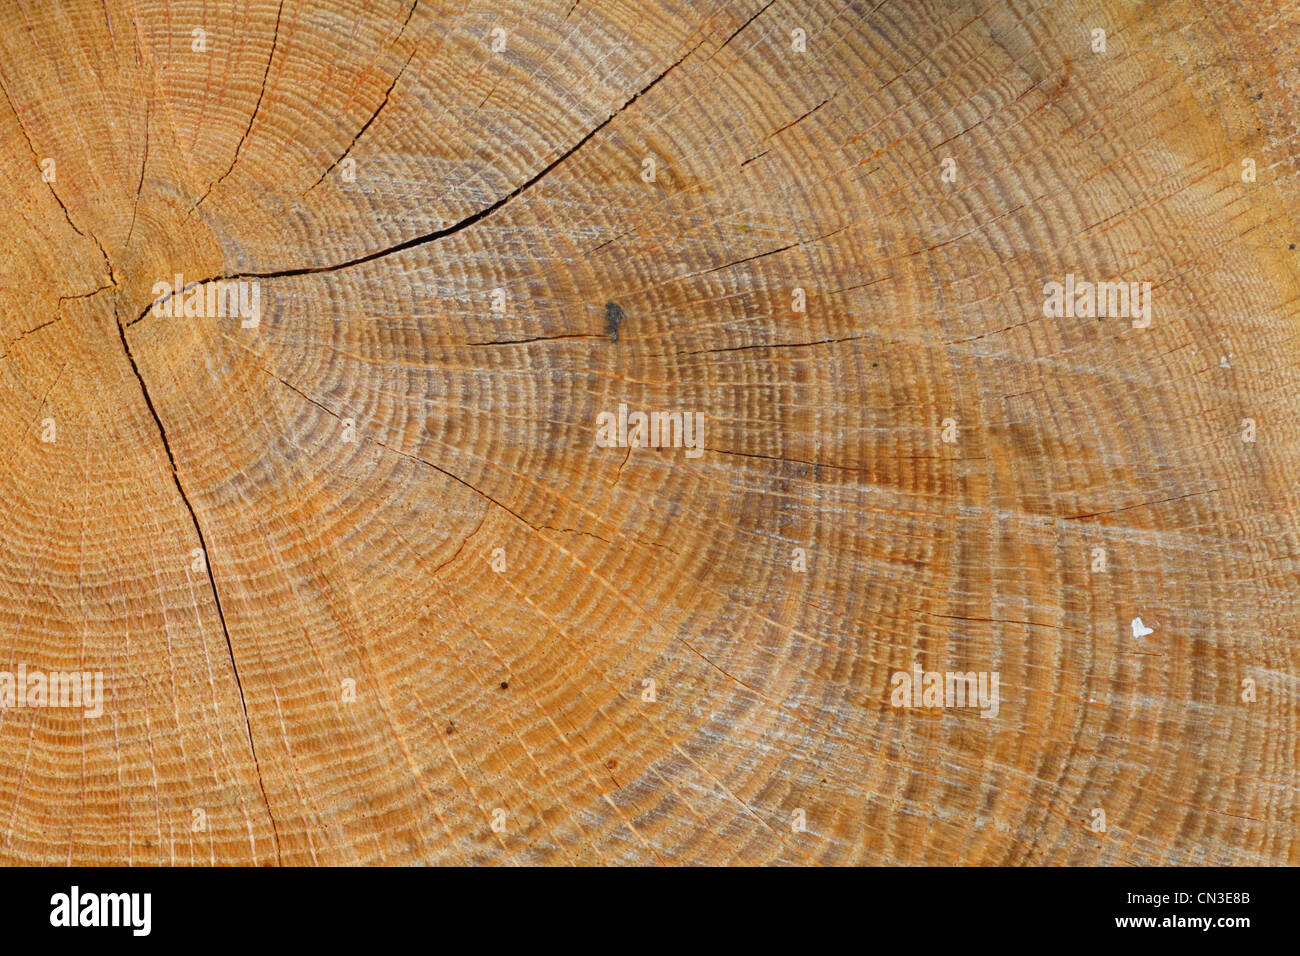 Frais coupé souche d'un chêne sessile (Quercus petraea), montrant les anneaux de croissance des arbres. Powys, Pays de Galles, avril. Banque D'Images